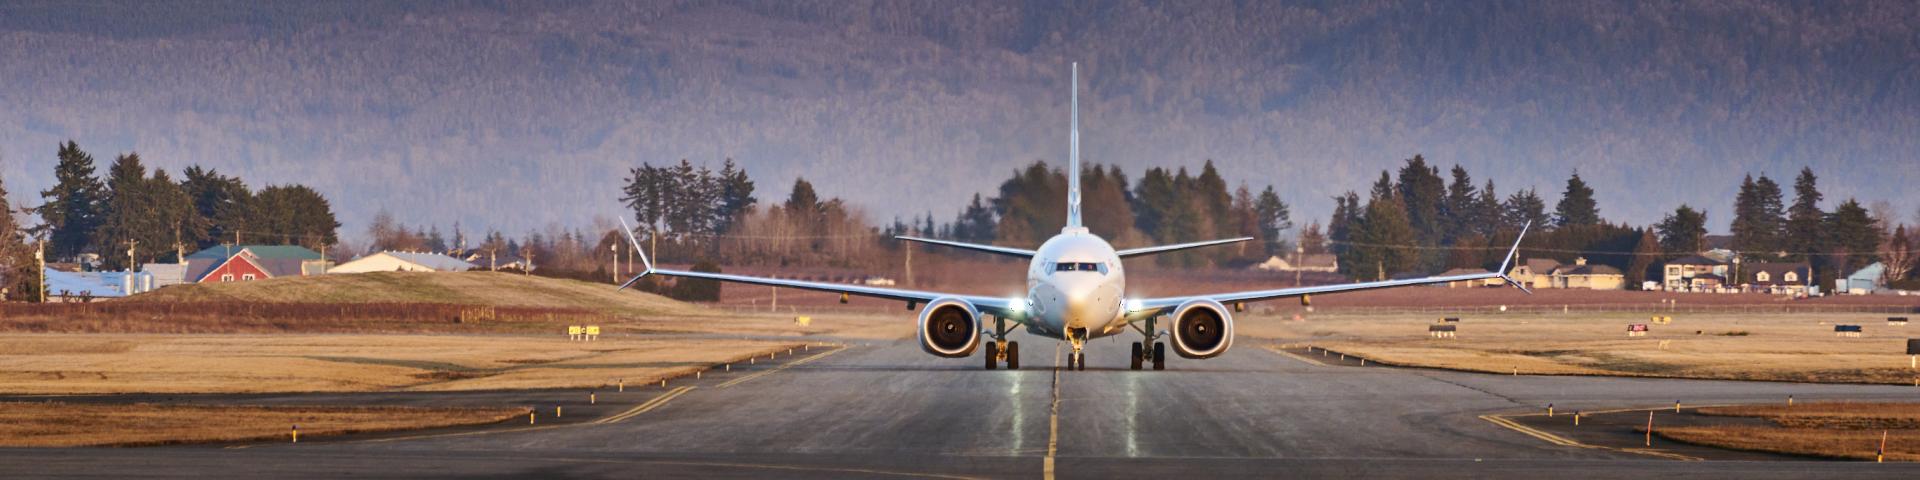 Image of plane on runway